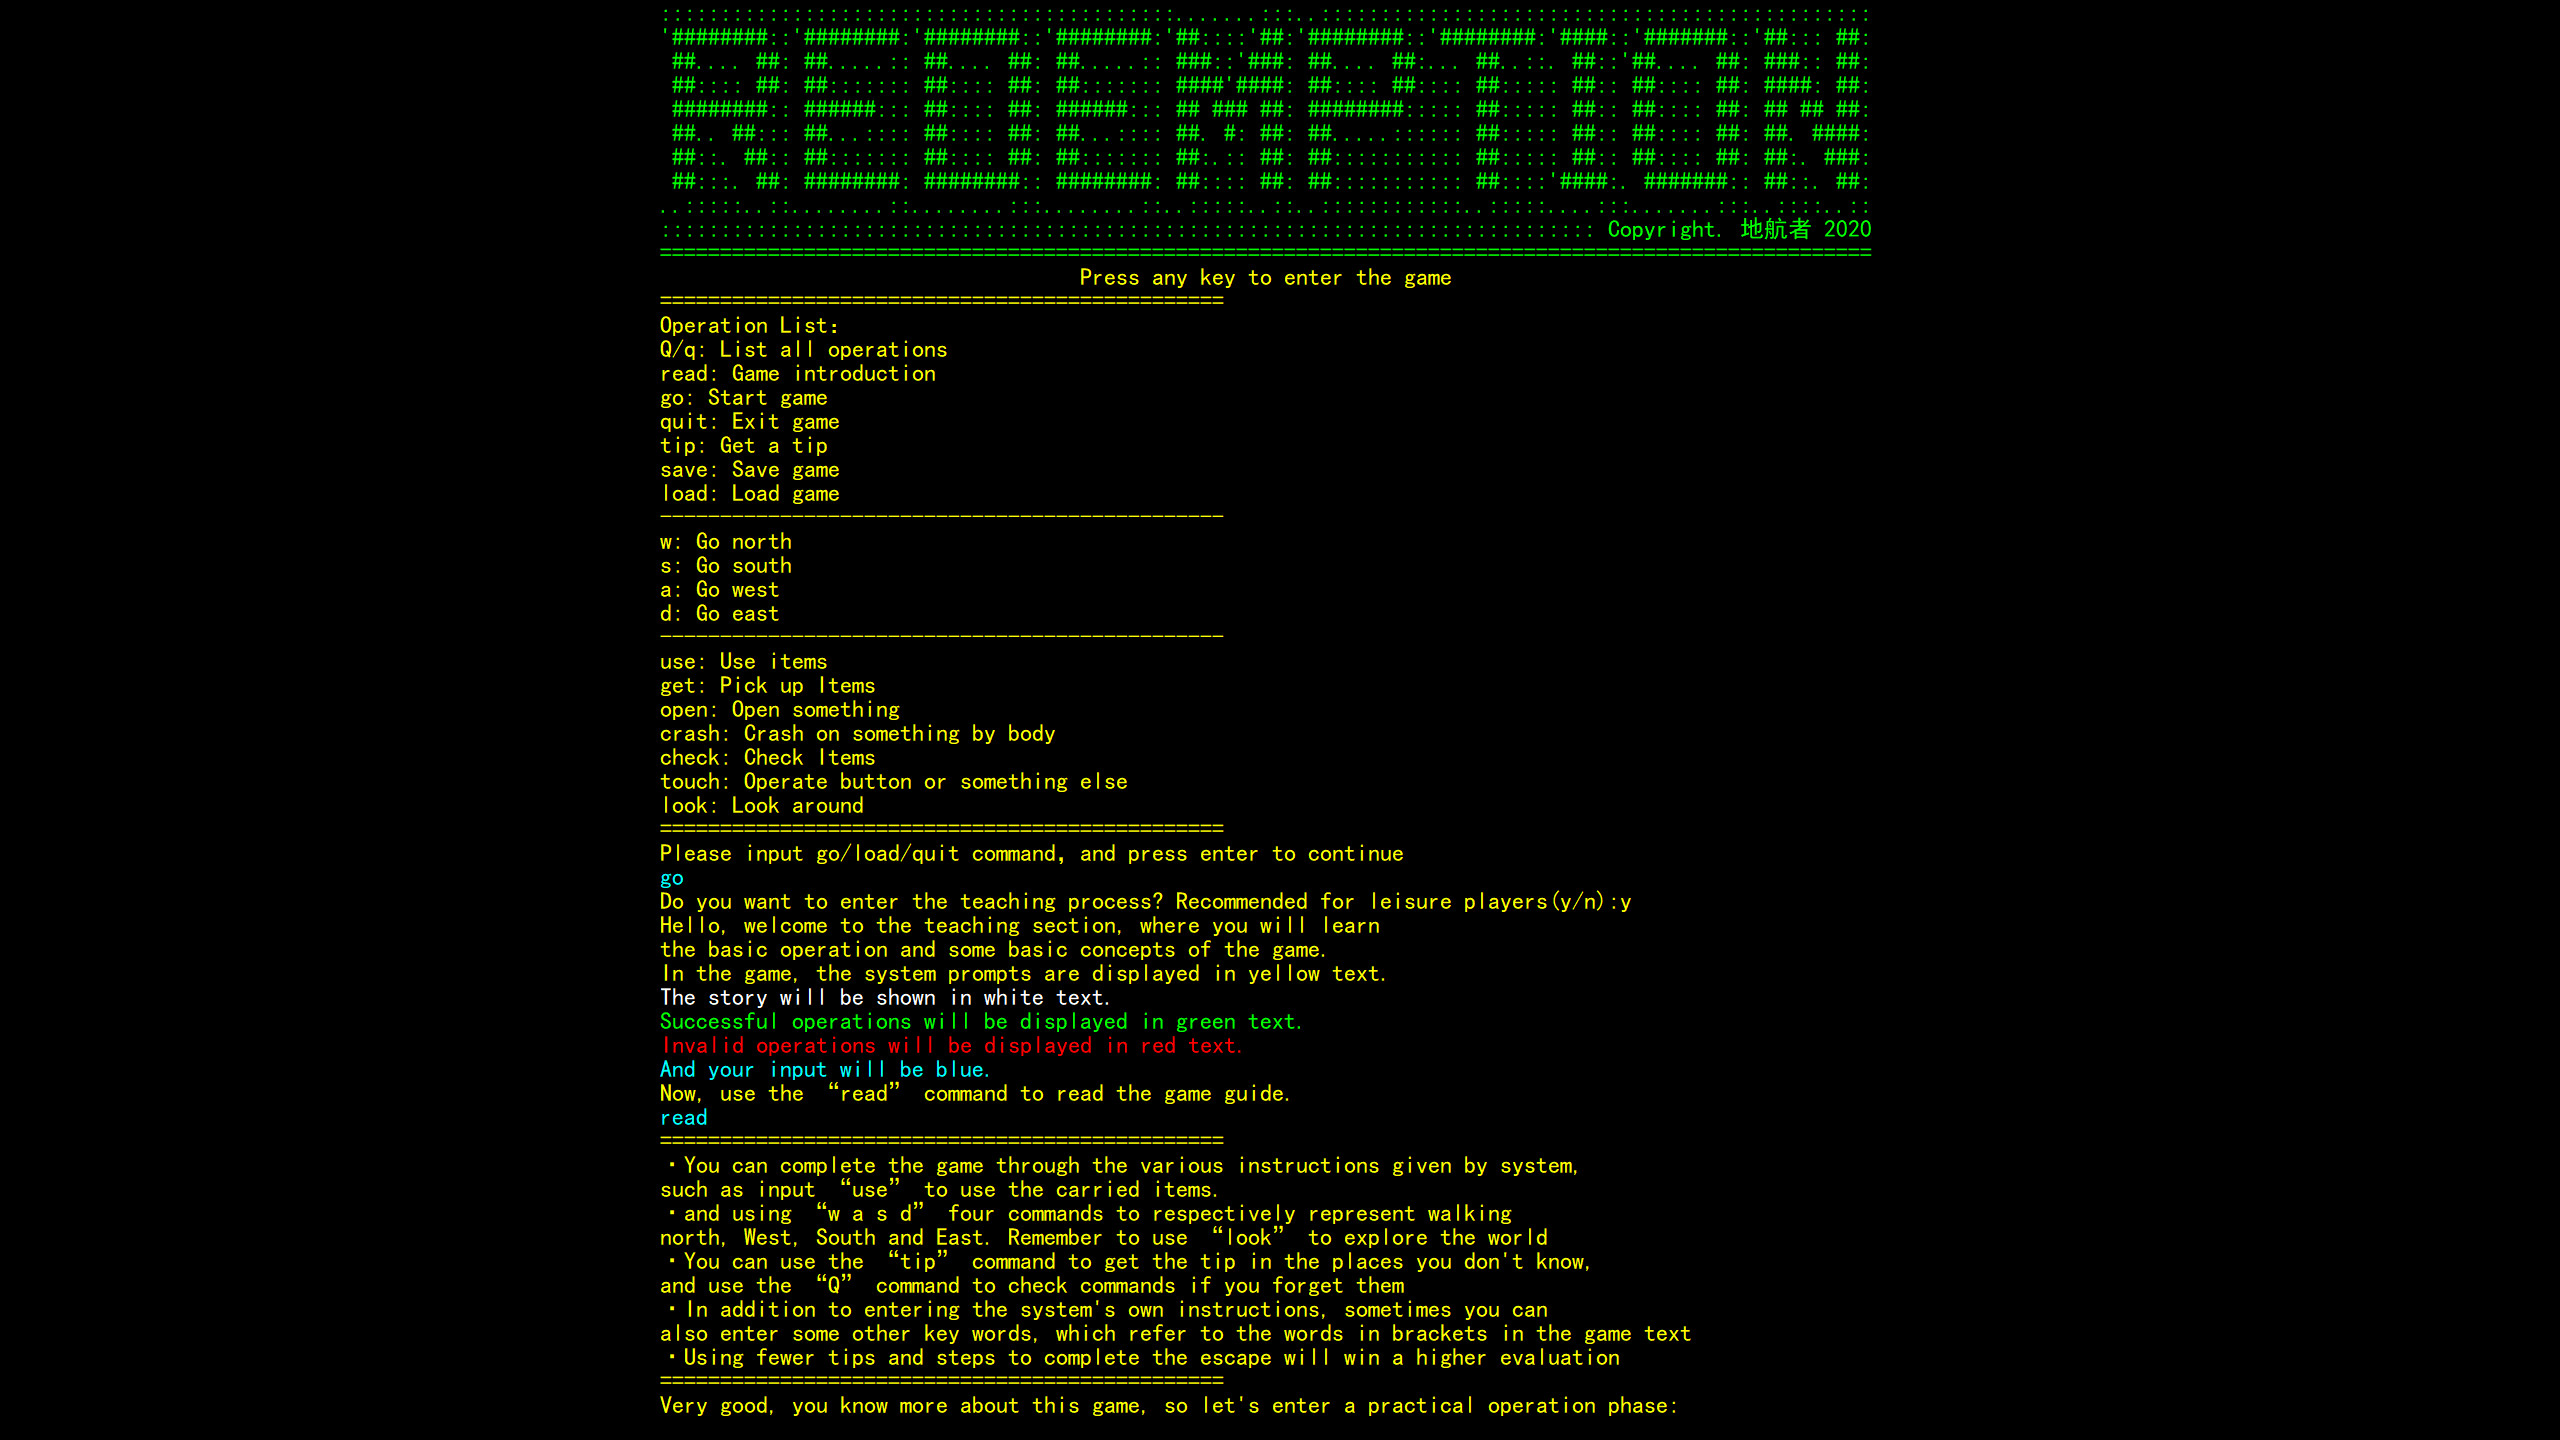 The Door Of Redemption screenshot